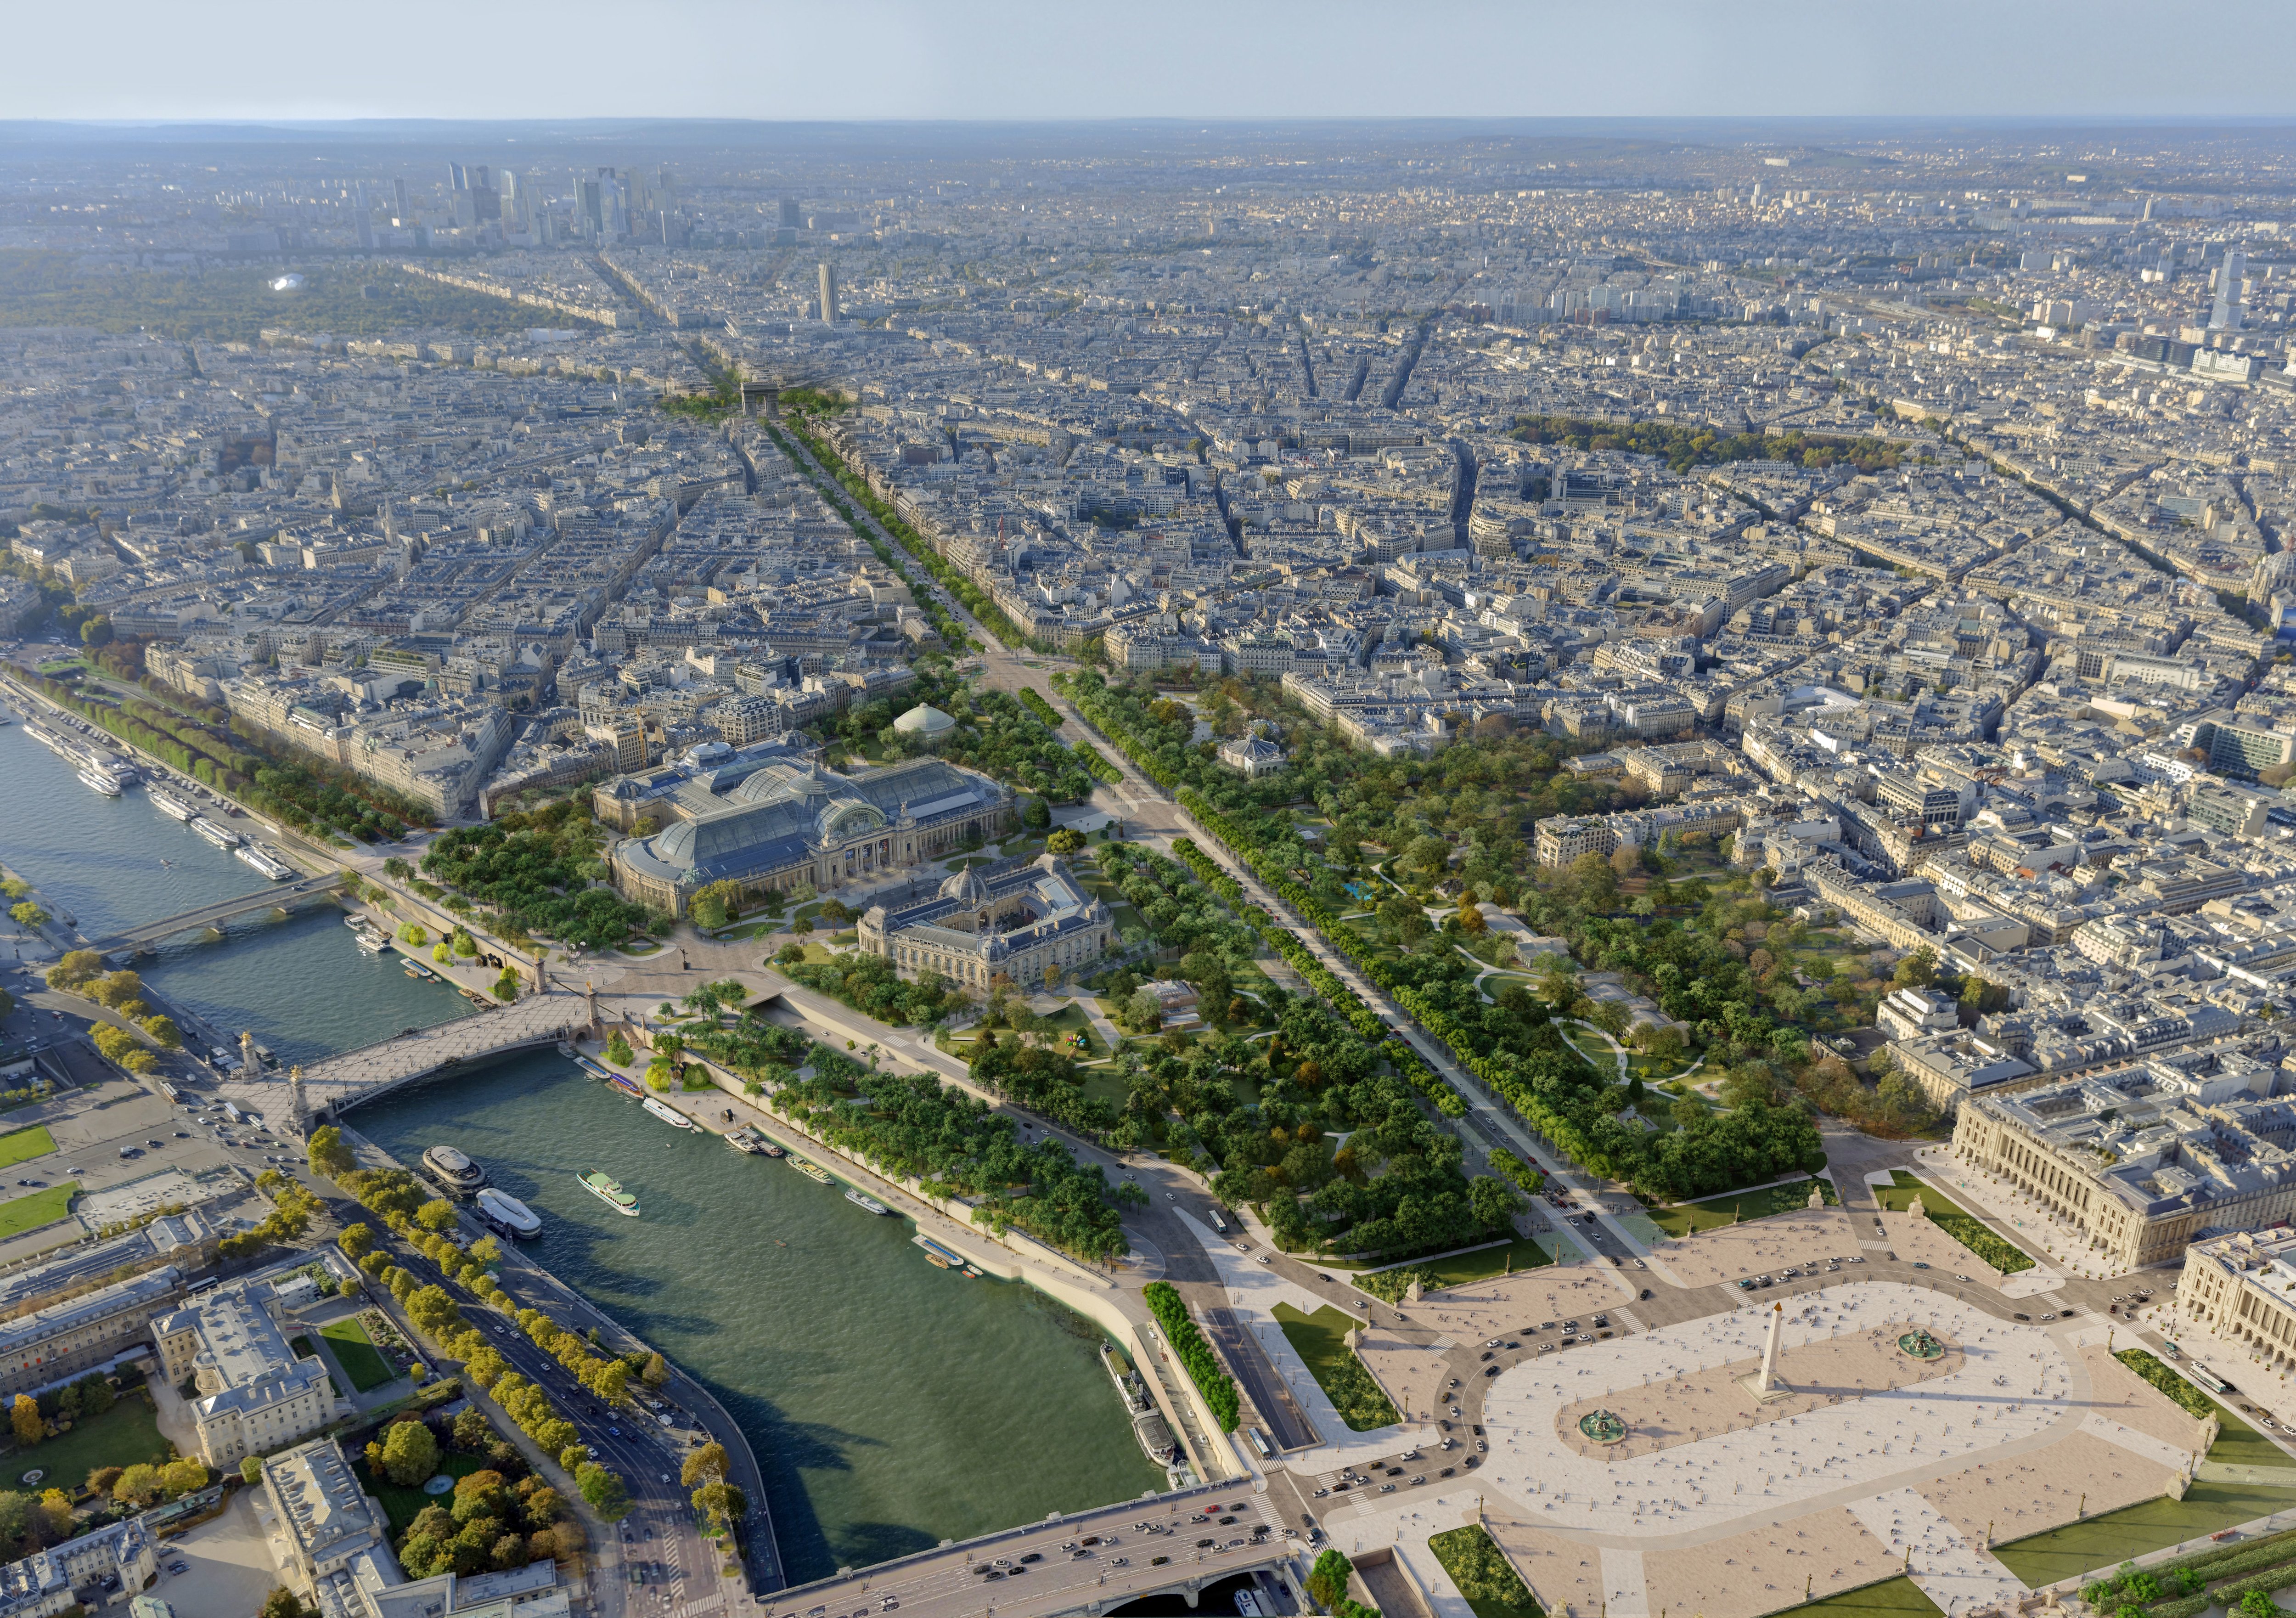 Le comité des Champs-Élysées préconise, entre autres, d'étendre les jardins du bas de l'avenue au-dessus des souterrains routiers qui les longent pour les reconnecter aux quais de Seine (Image de synthèse). PCA-STREAM